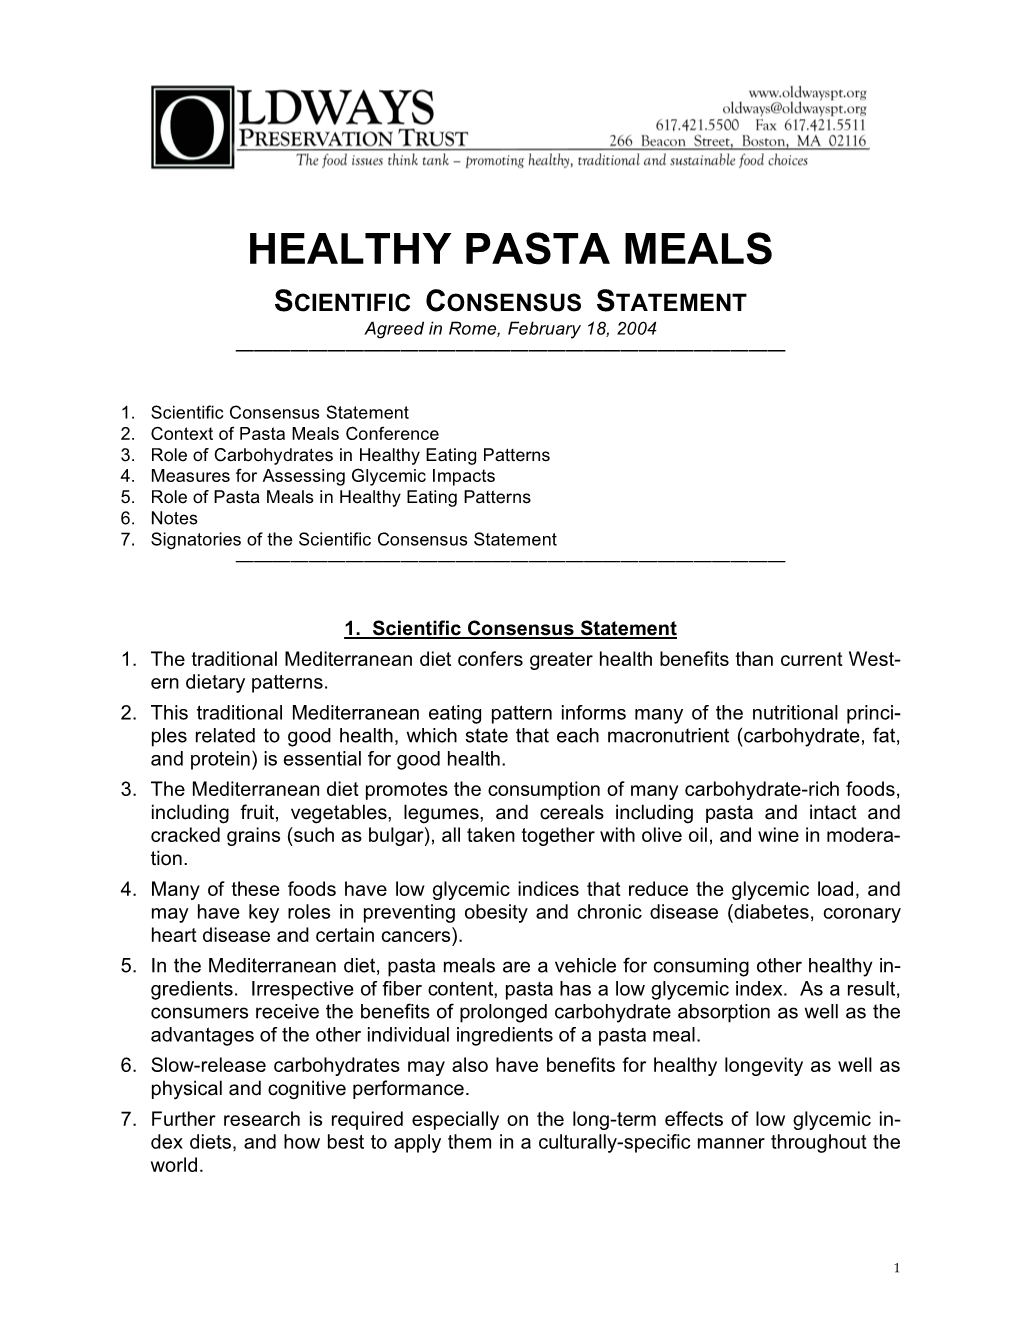 Healthy Pasta Meals Scientiﬁc Consensus Statement